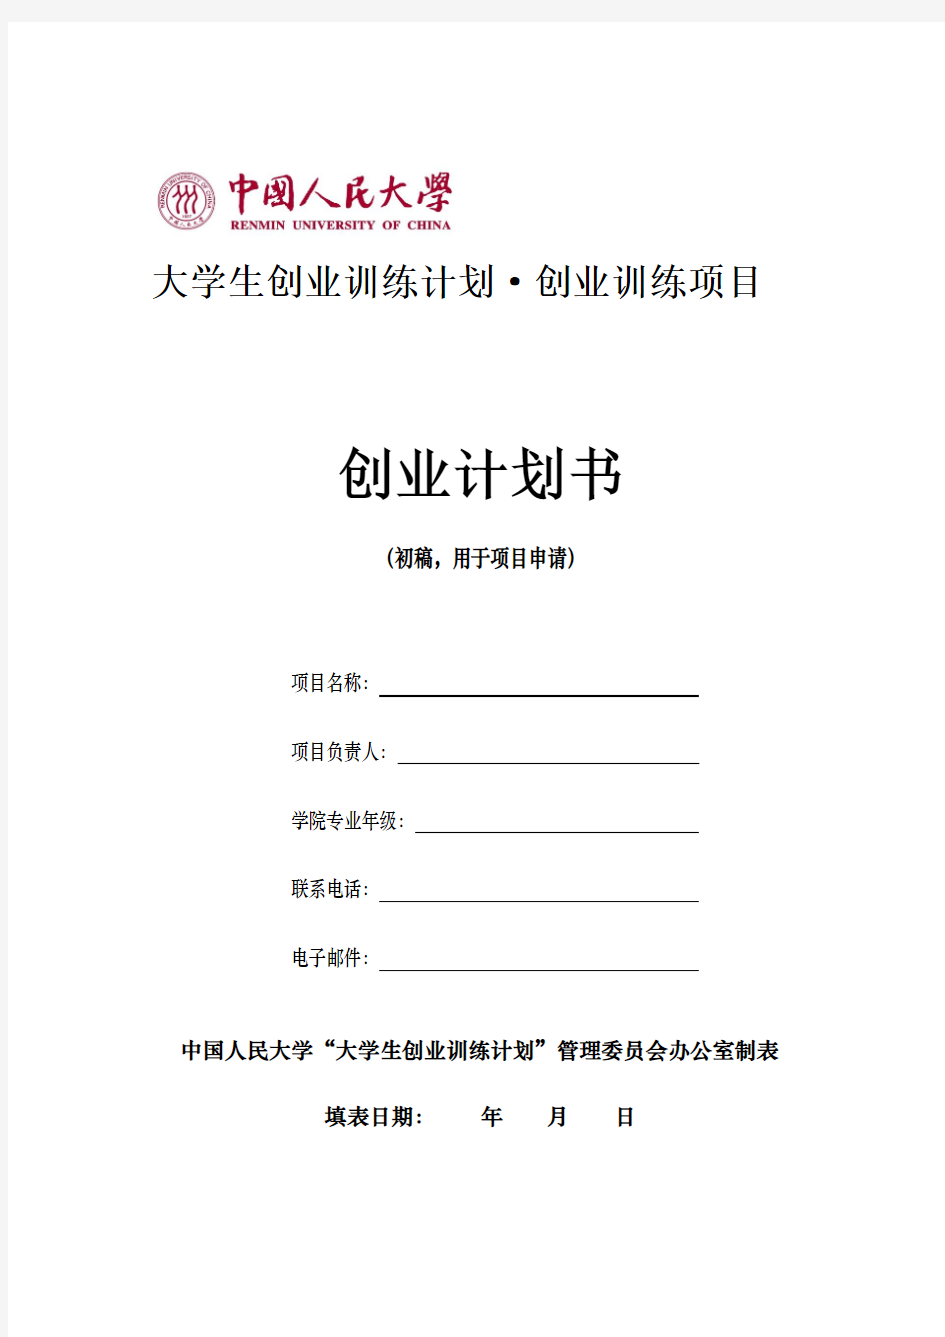 中国人民大学创业训练项目创业计划书(初稿,用于项目申请)